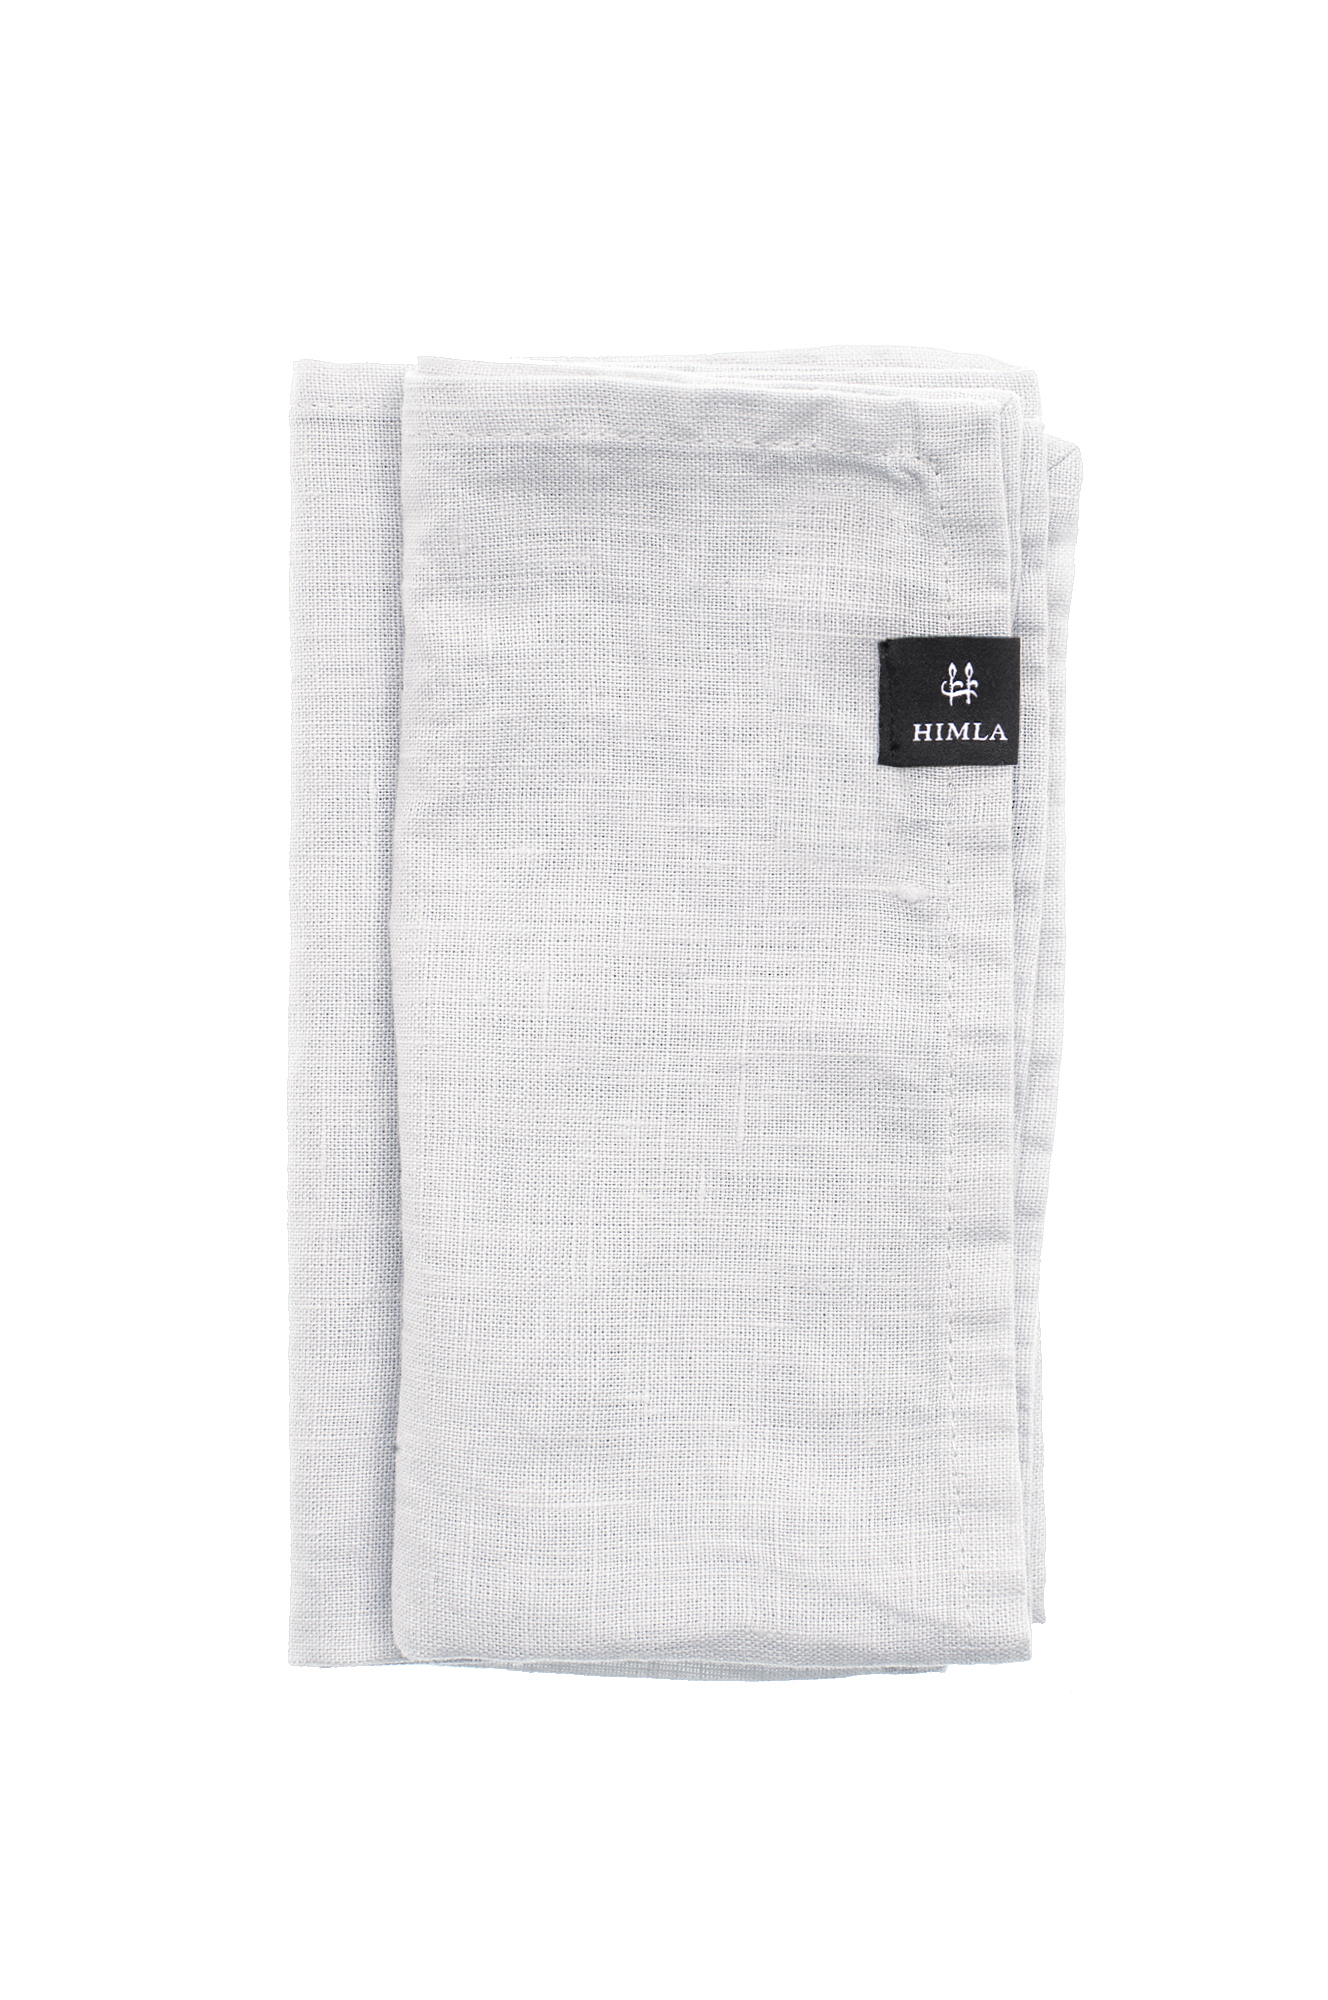 White Sunshine Linen Napkin 45x45cm (Set of 4)